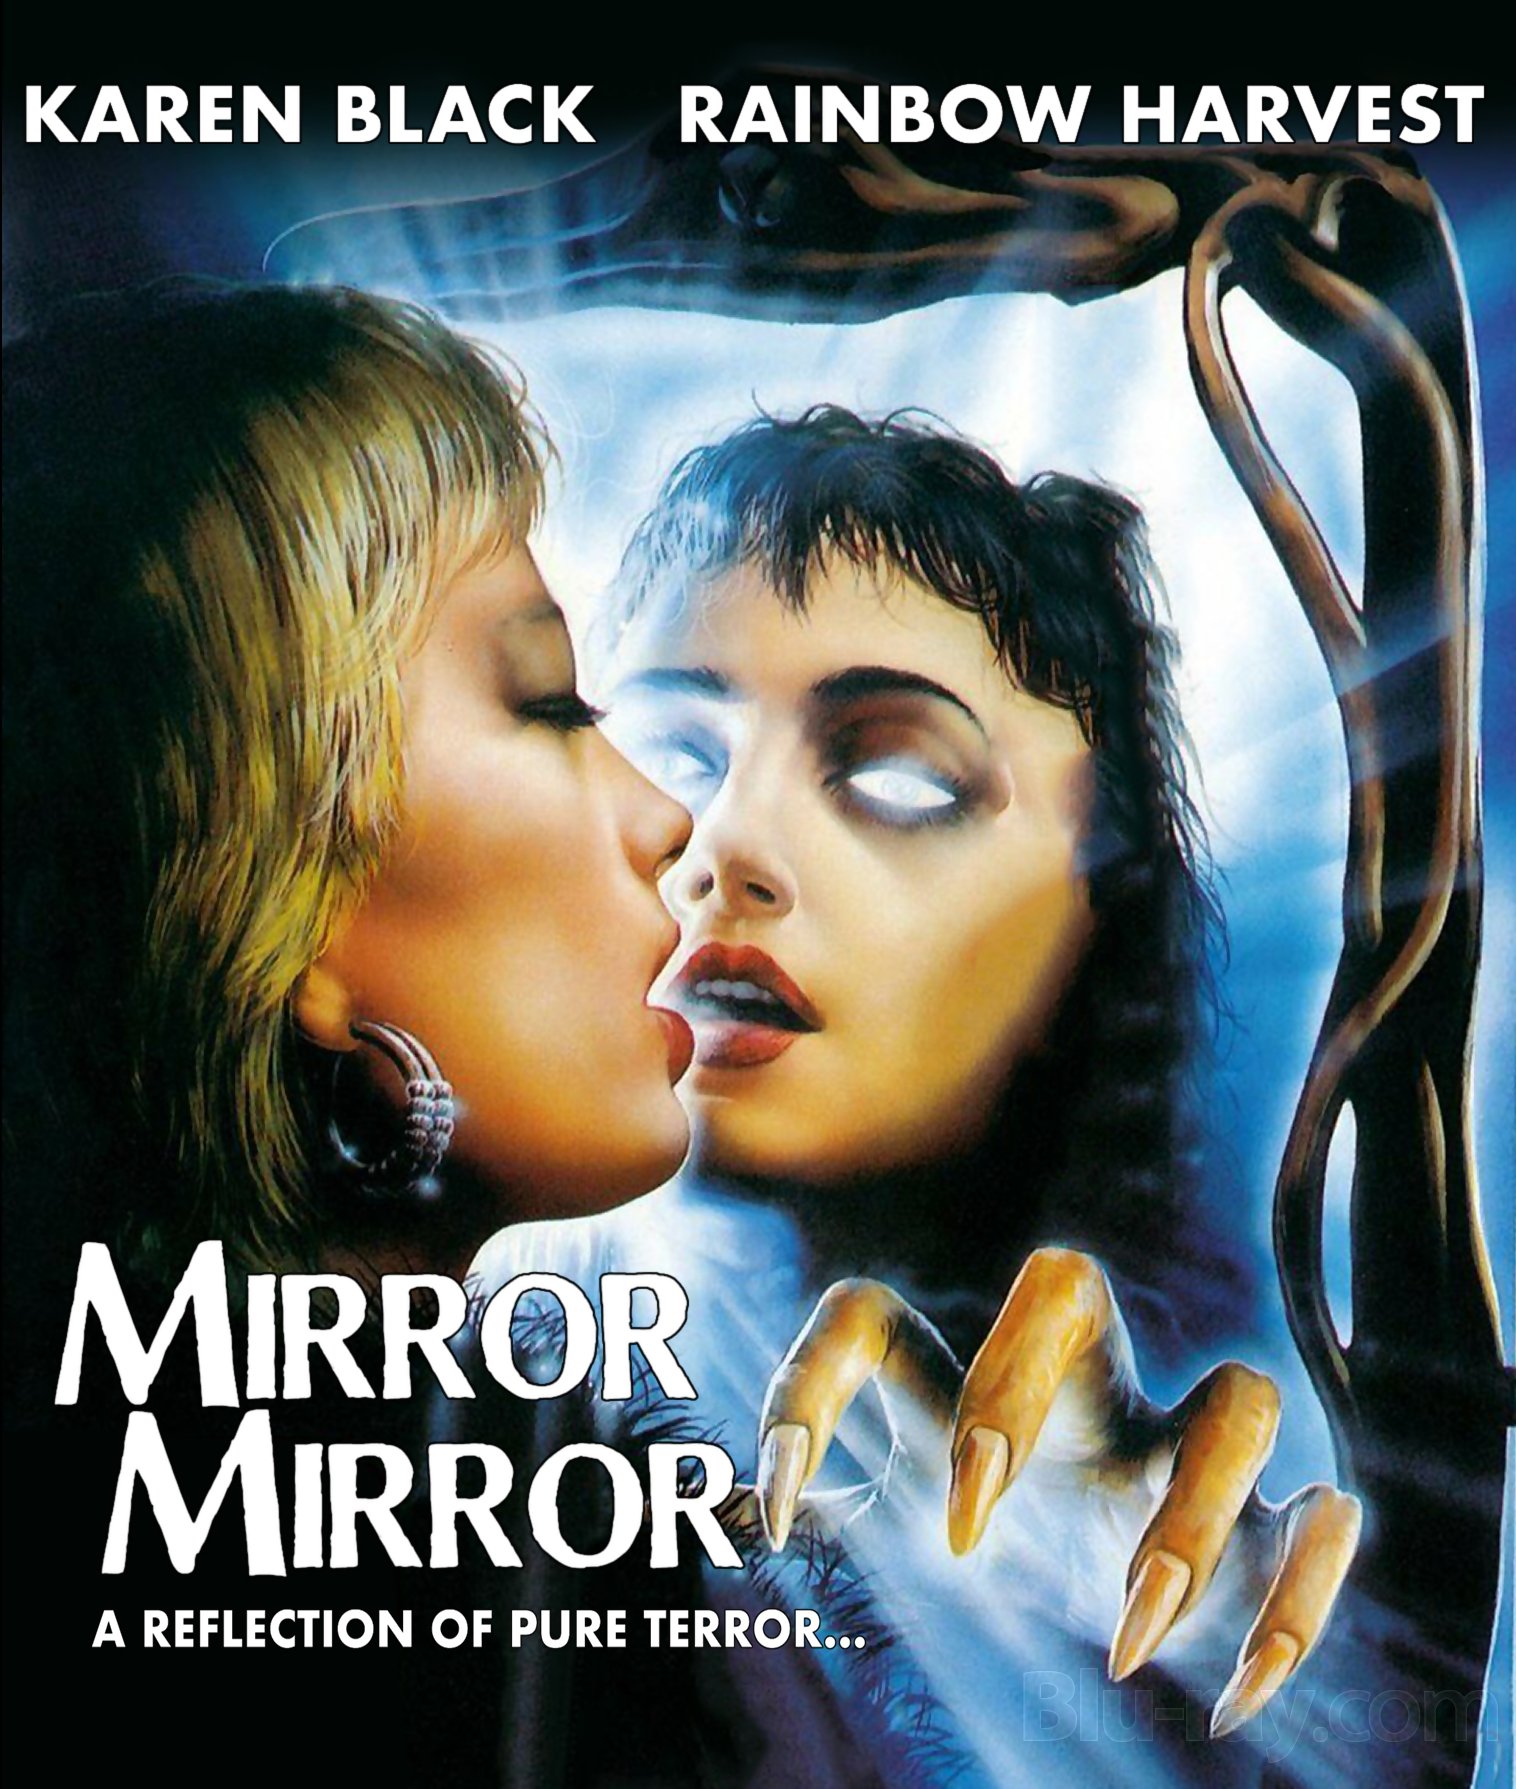 RETRO REVIEW: 'MIRROR MIRROR' (1990) — Macabre Daily